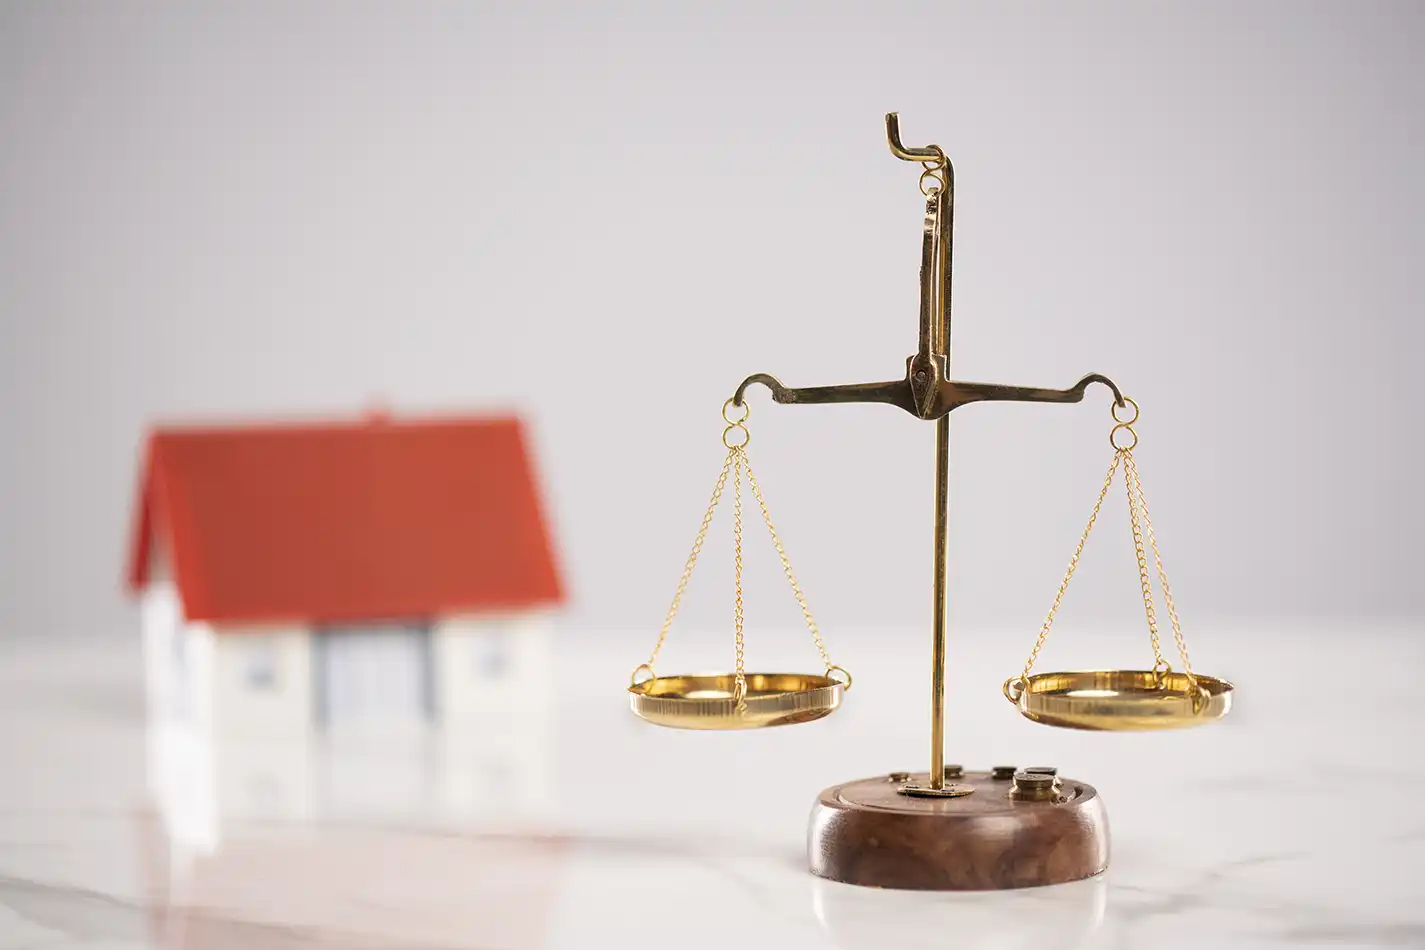 10 cas en droit Immobilier où faire appel à un avocat | Cabinet Trolliet-Malinconi